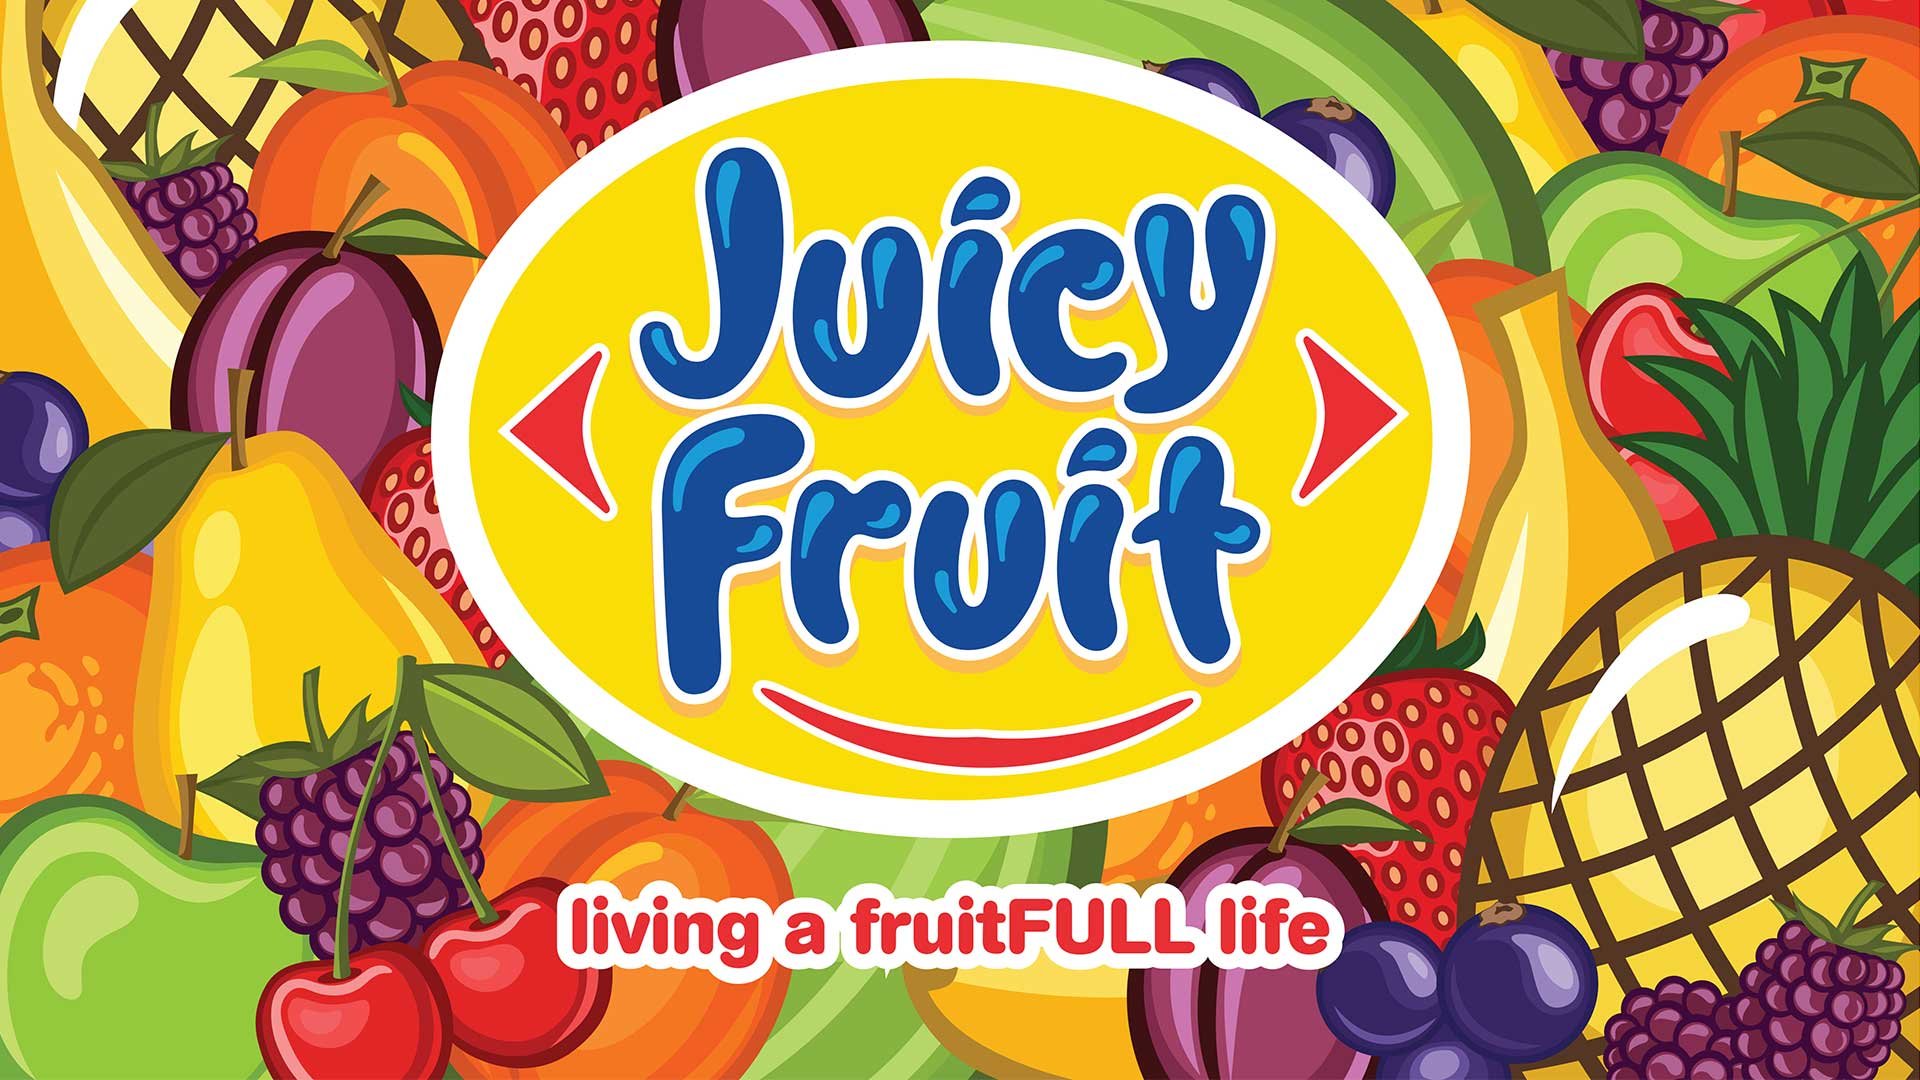 Блокс фрукт арты. Блокс Фрутс. Логотип juicy Fruit. Лого для Блокс Фрут. Фрукты Блокс Фрутс.